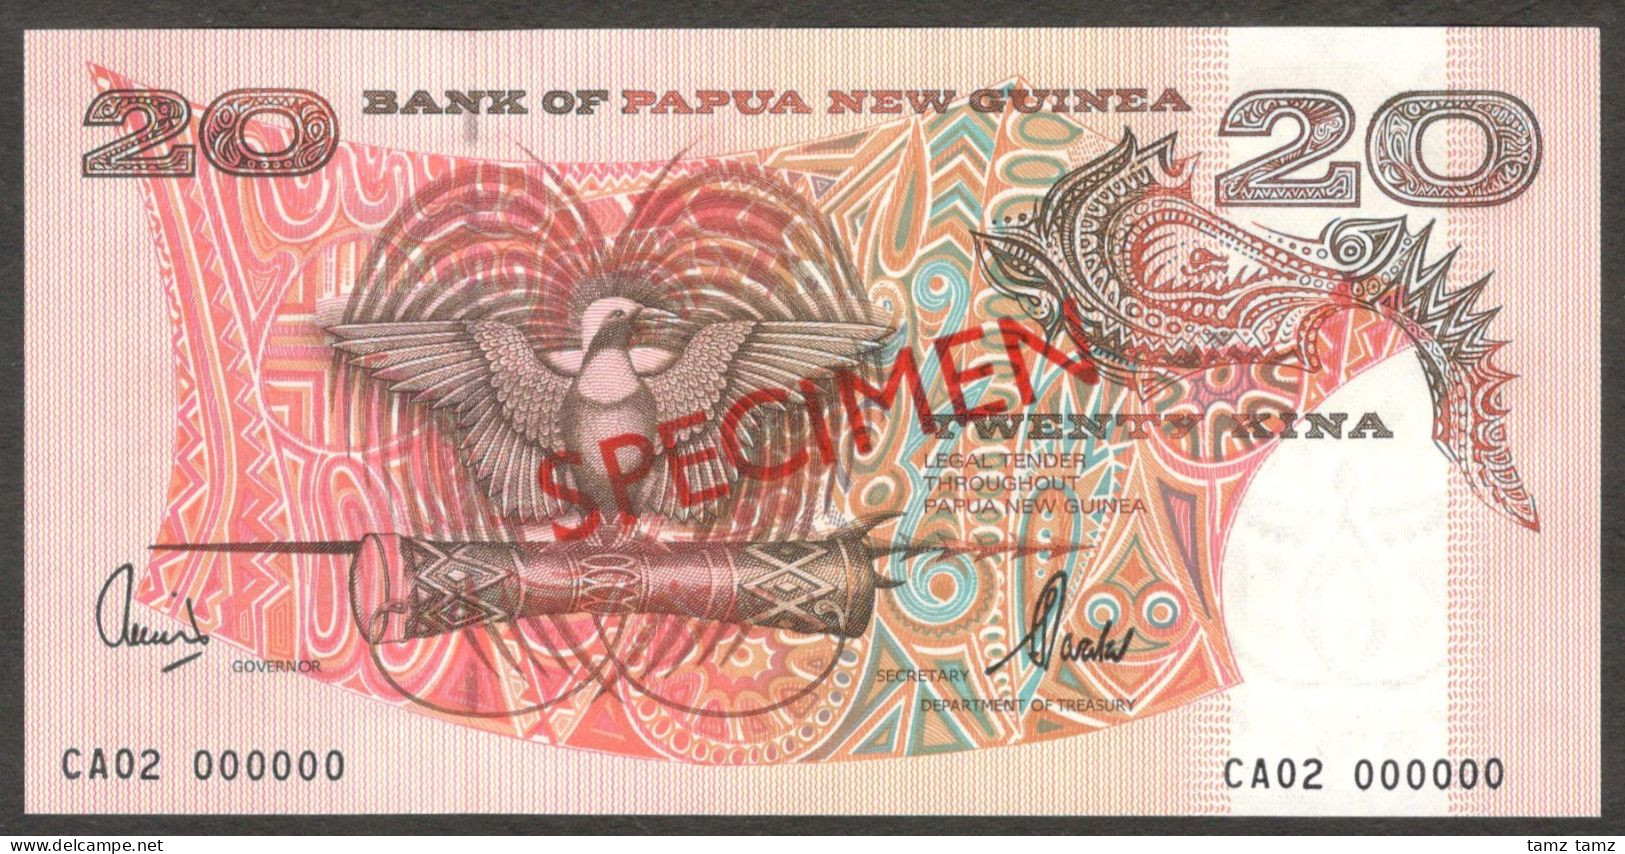 Papua New Guinea 20 Kina P-10es 2002 Specimen CA02 000000 UNC - Papoea-Nieuw-Guinea